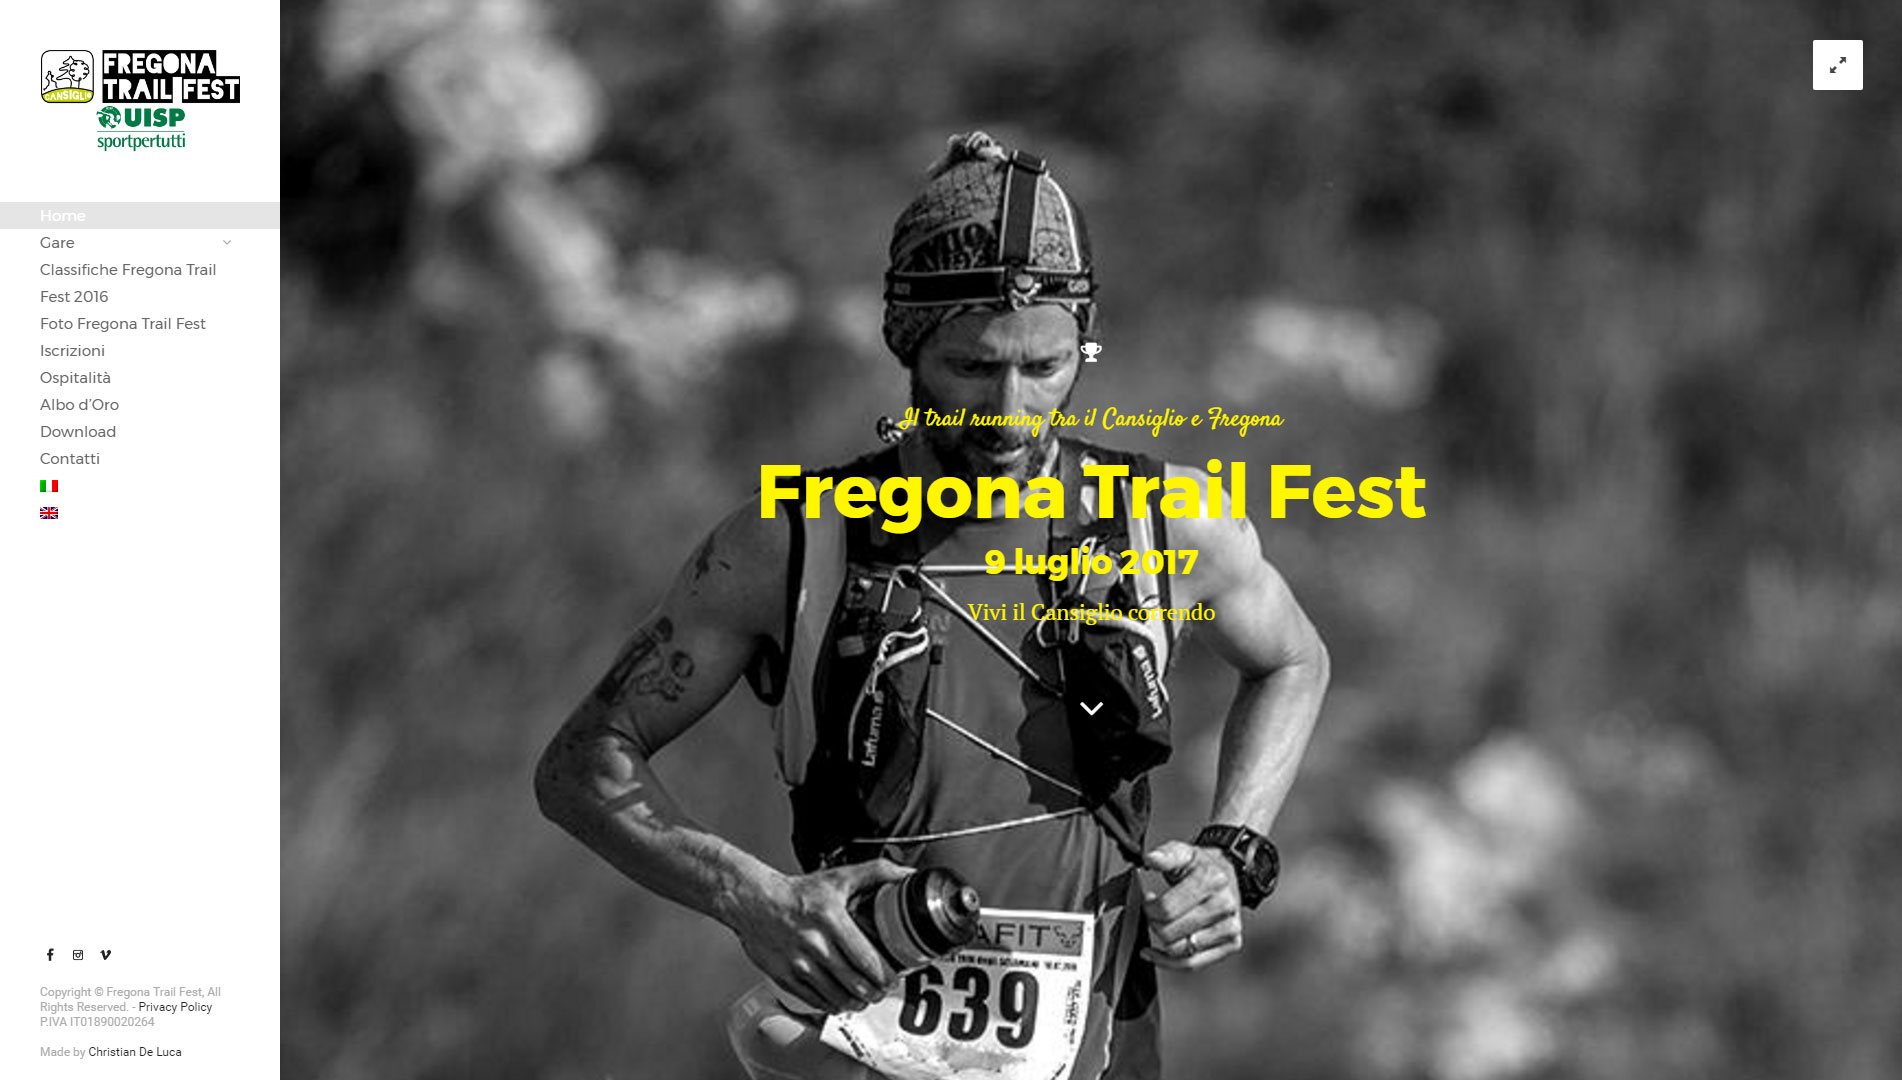 Fregona Trail Fest | Christian De Luca - Web Designer & Developer